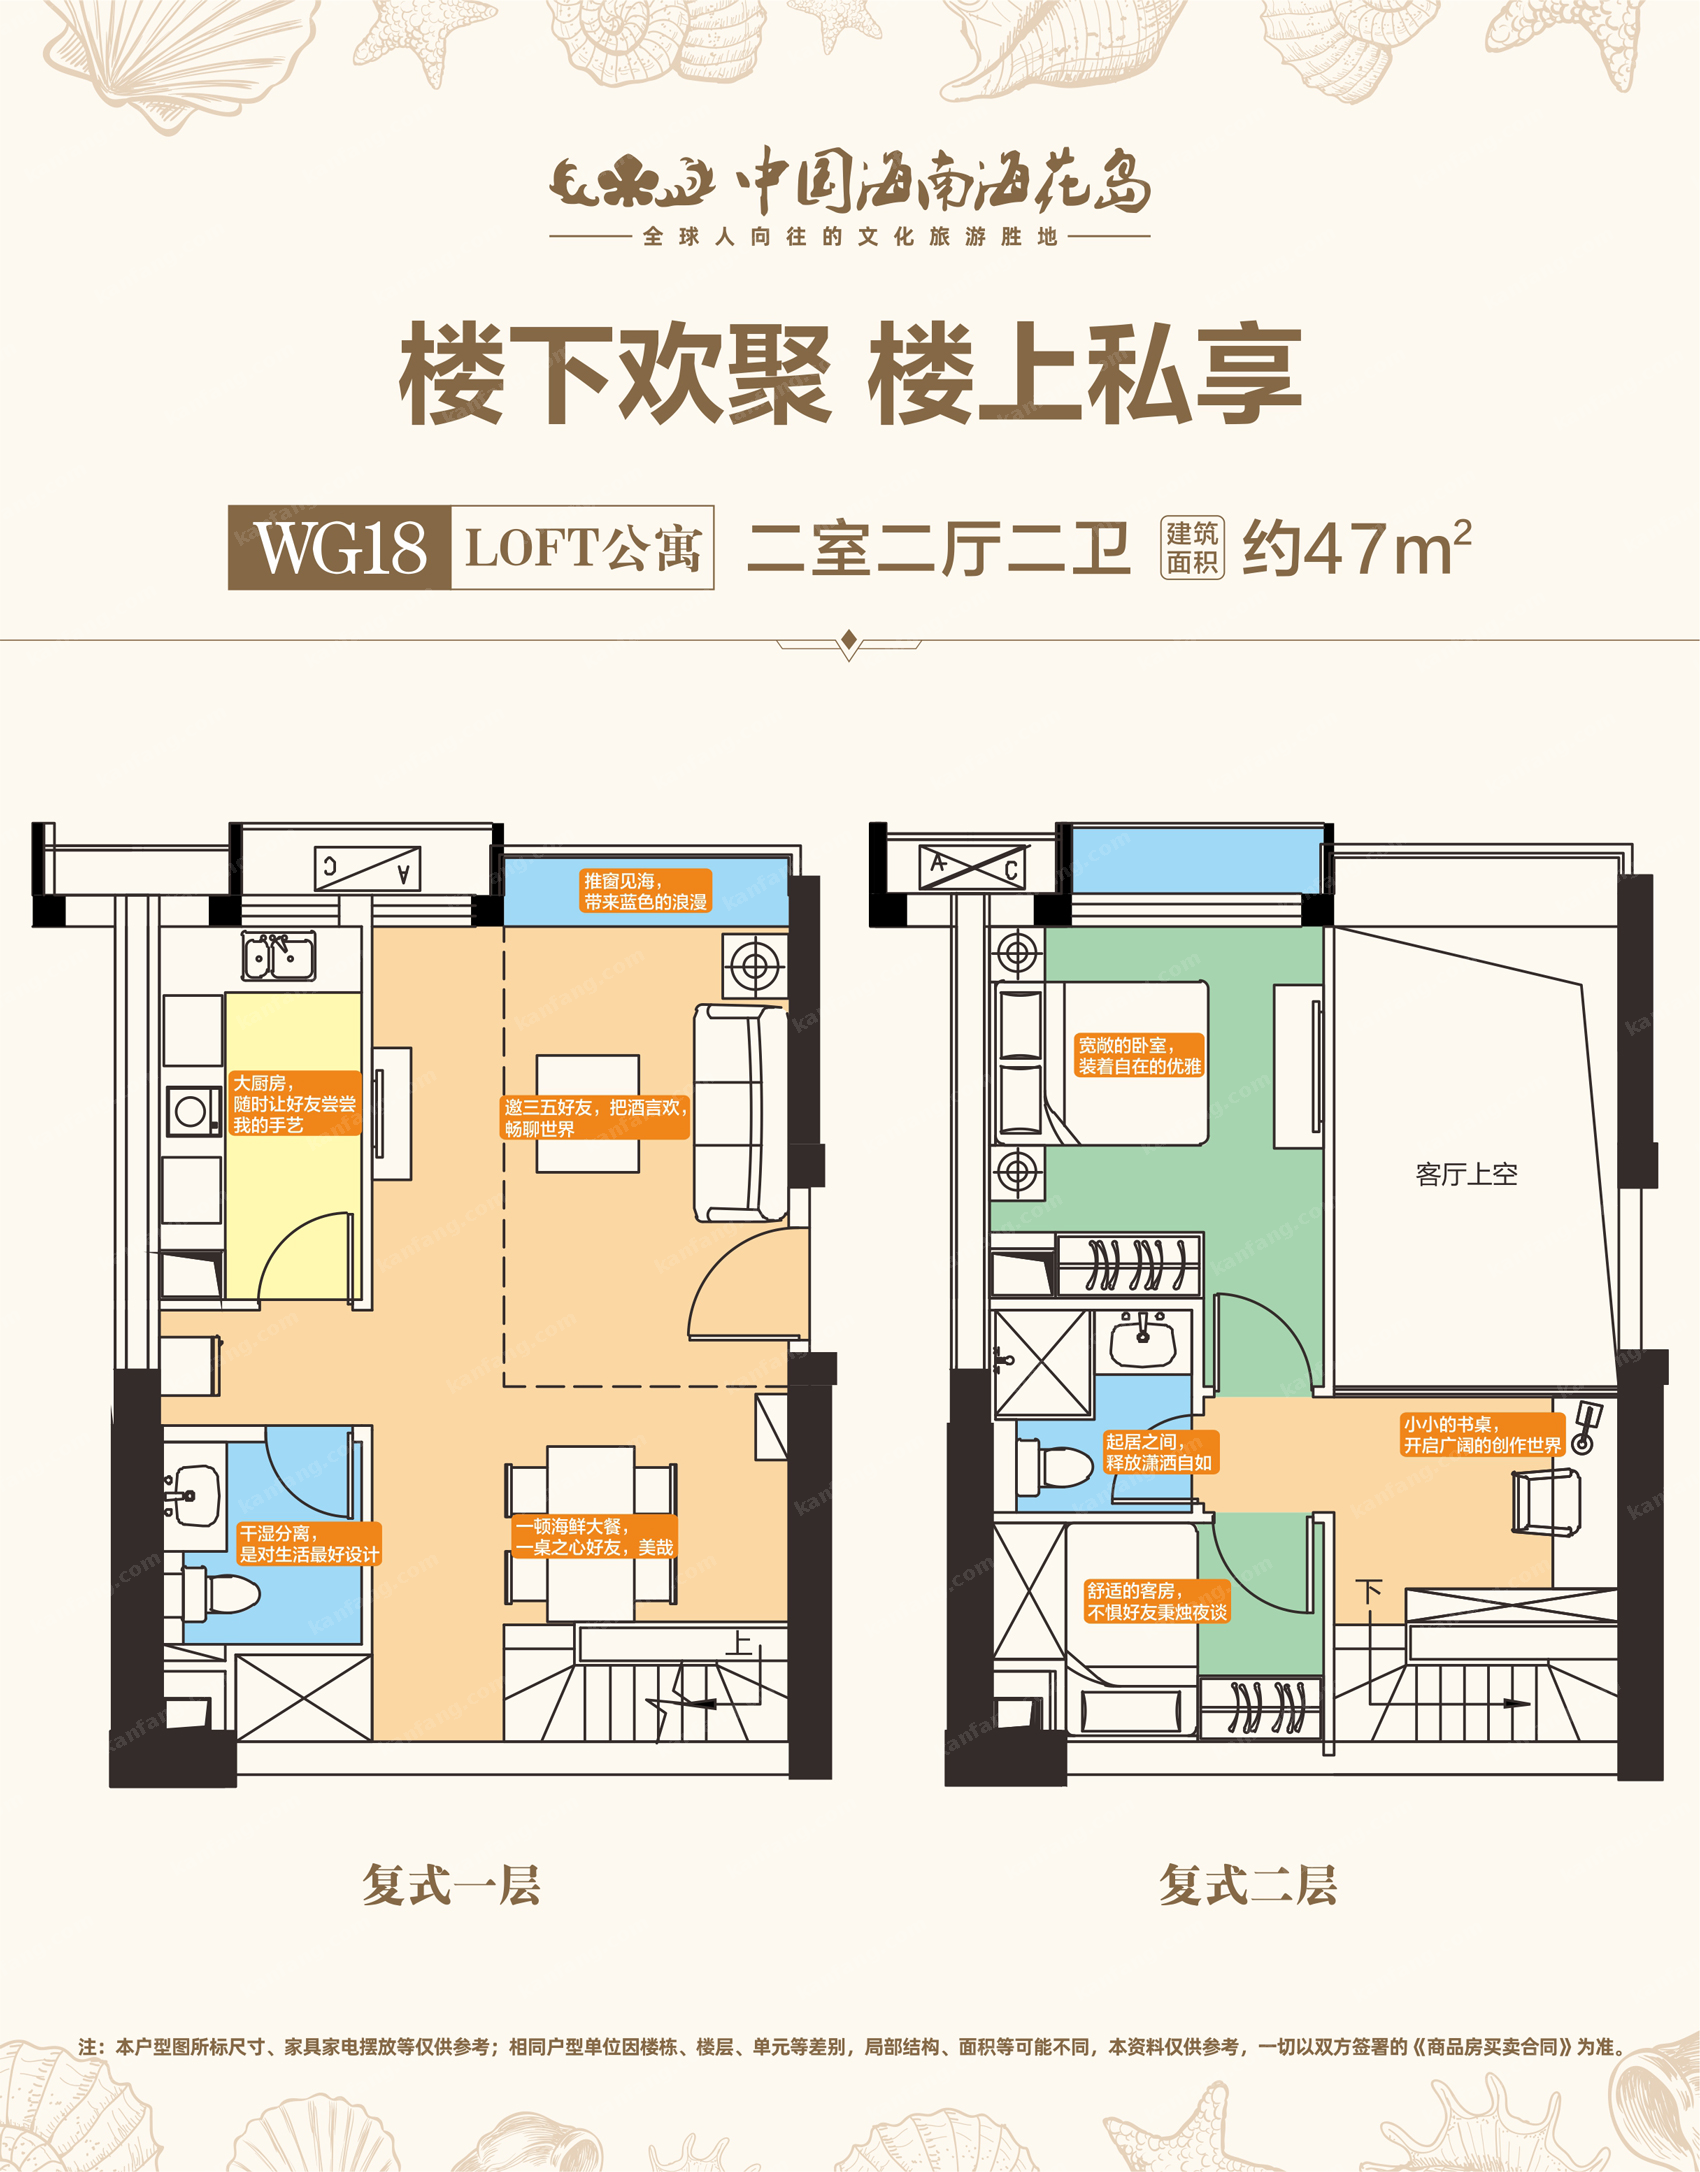 WG18loft公寓